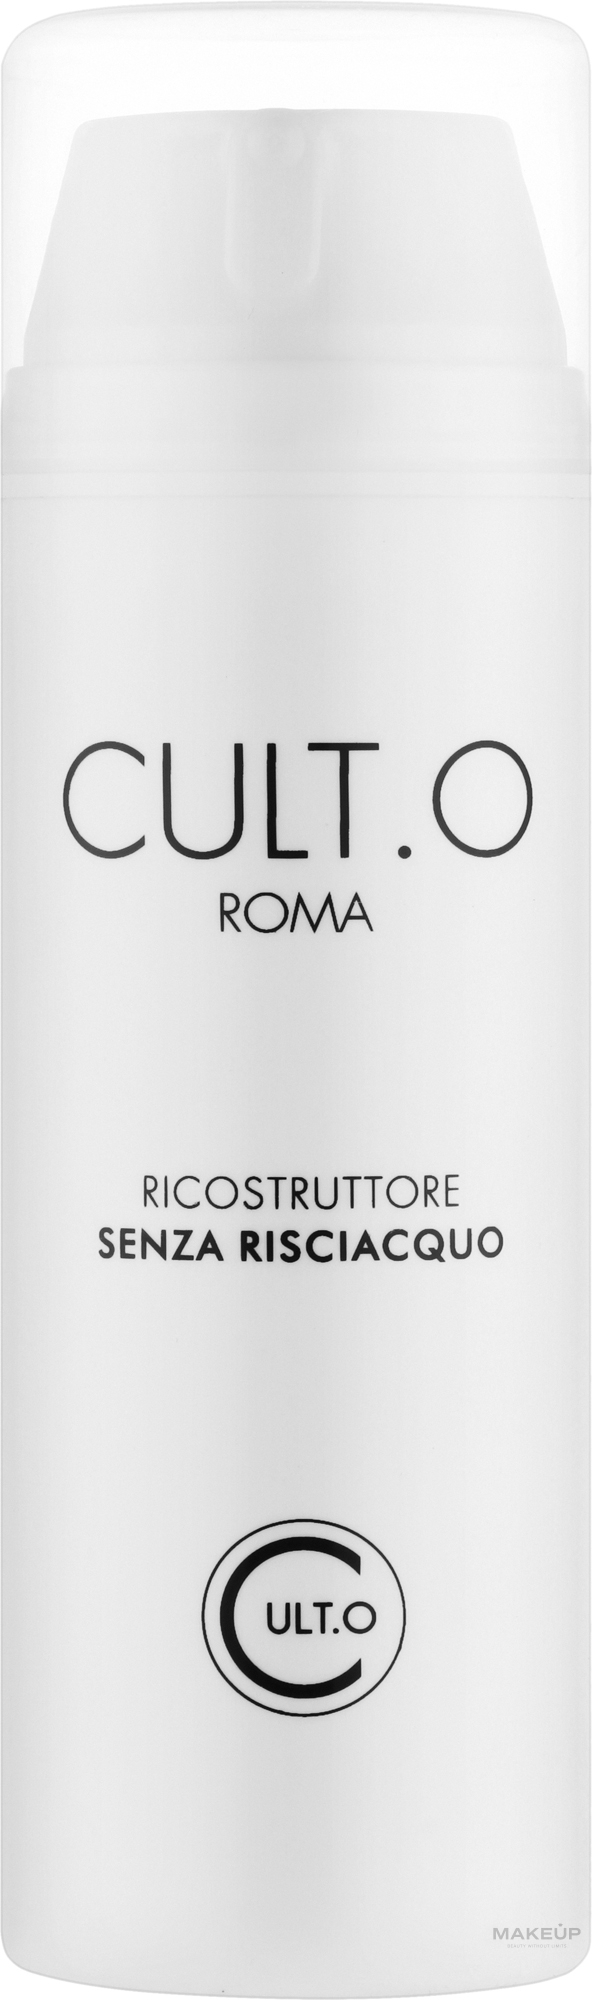 Volumizing Hair Cream - Cult.O Roma Crema Voumizante Senza Risciacquo — photo 150 ml